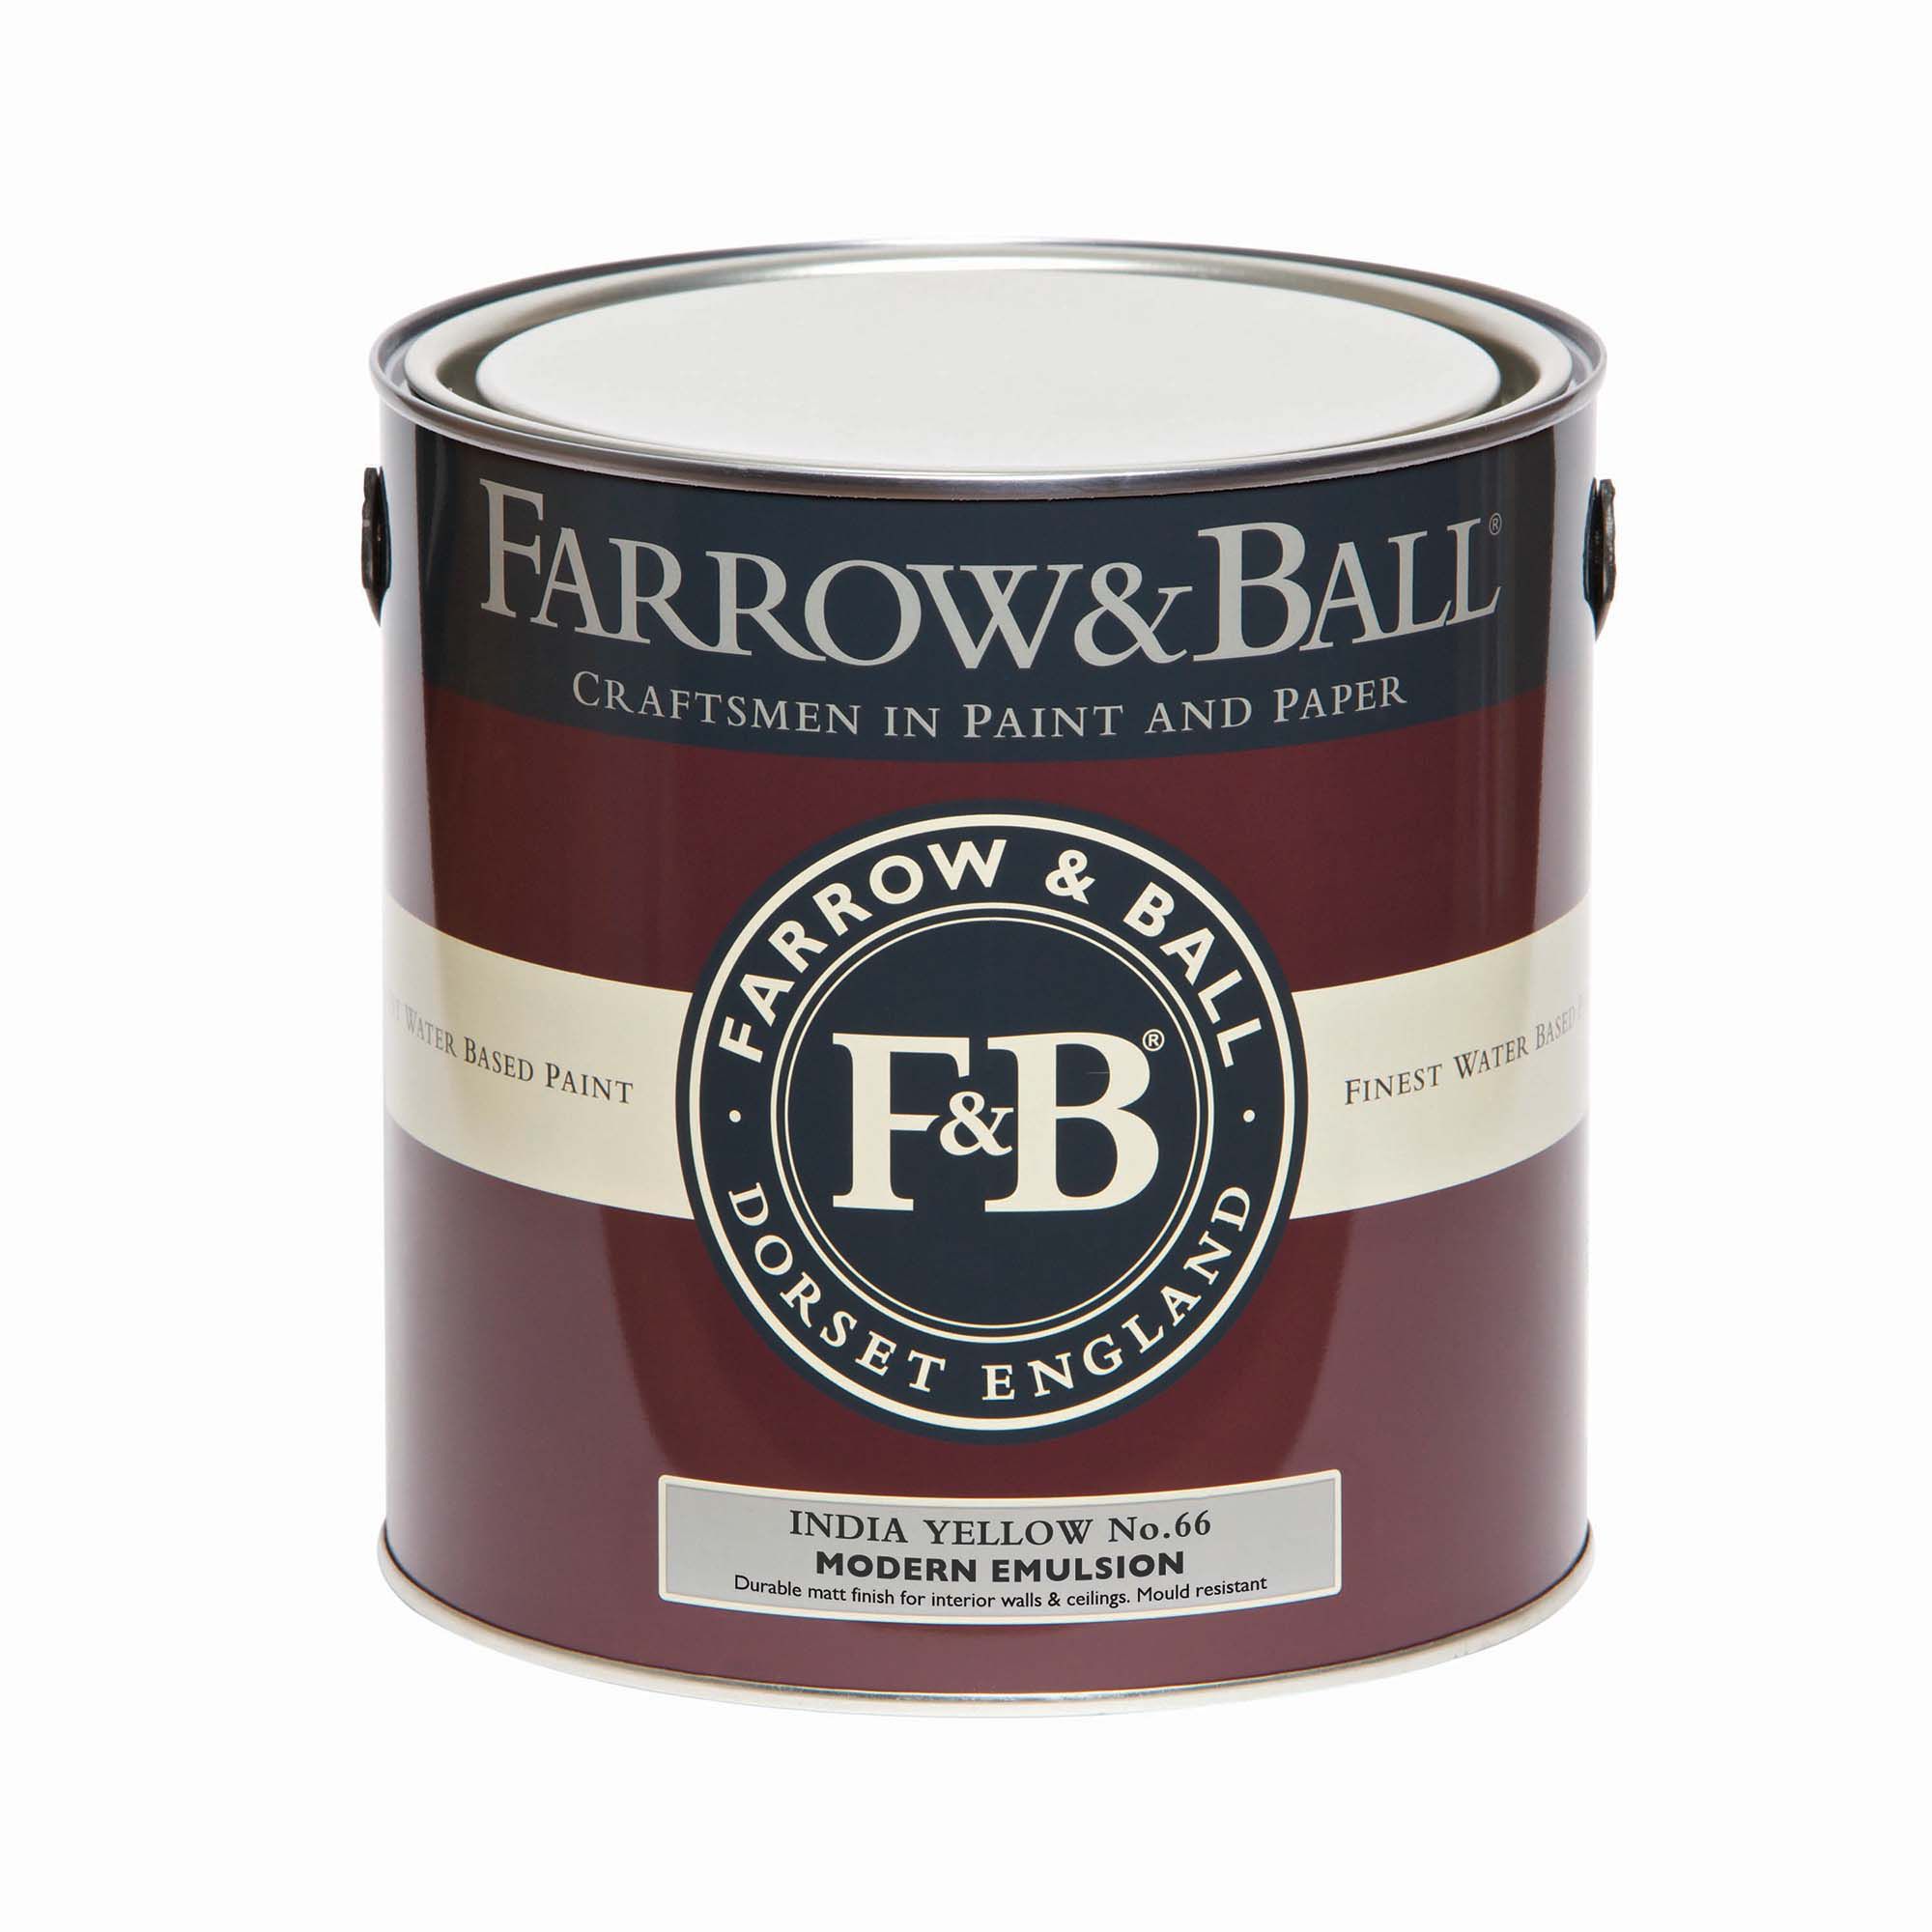 Farrow & Ball Modern India Yellow No.66 Matt Emulsion paint, 2.5L